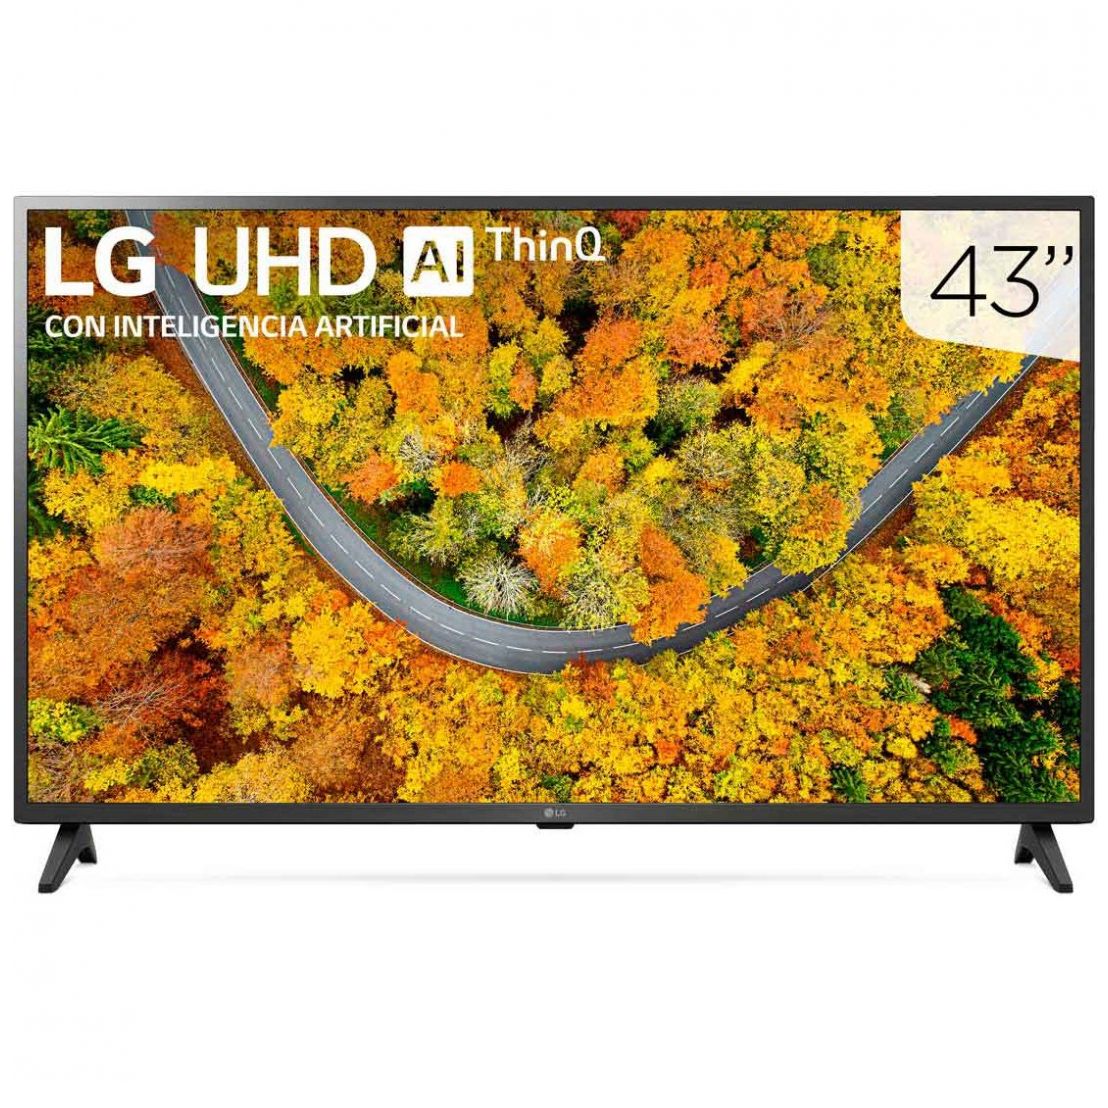 Pantalla LG Uhd Ai Thinq 43" 4K Smart Tv 43Up7500Psf